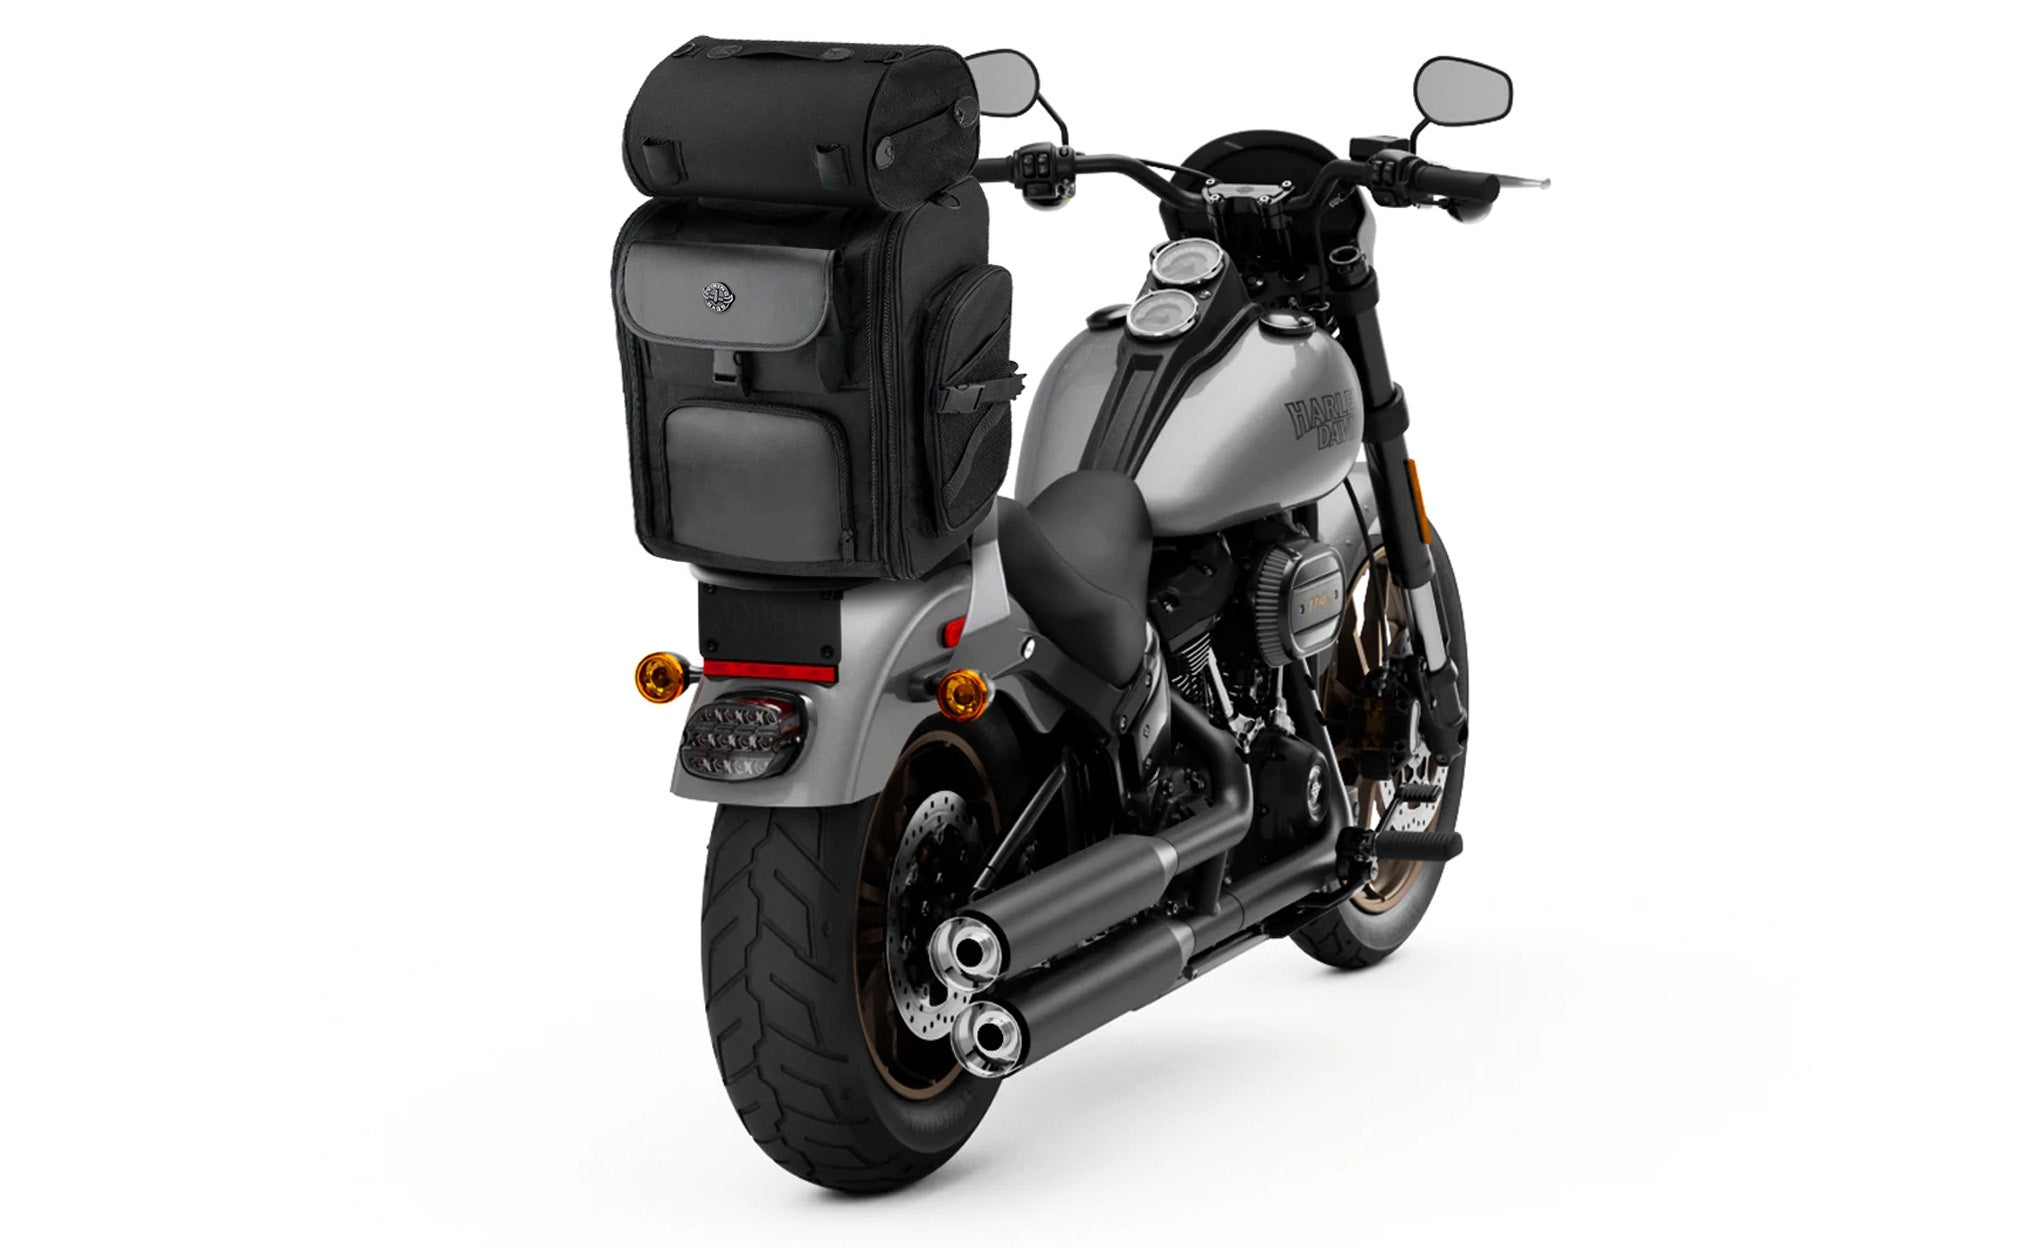 Viking Dwarf Medium Honda Motorcycle Tail Bag Bag on Bike View @expand